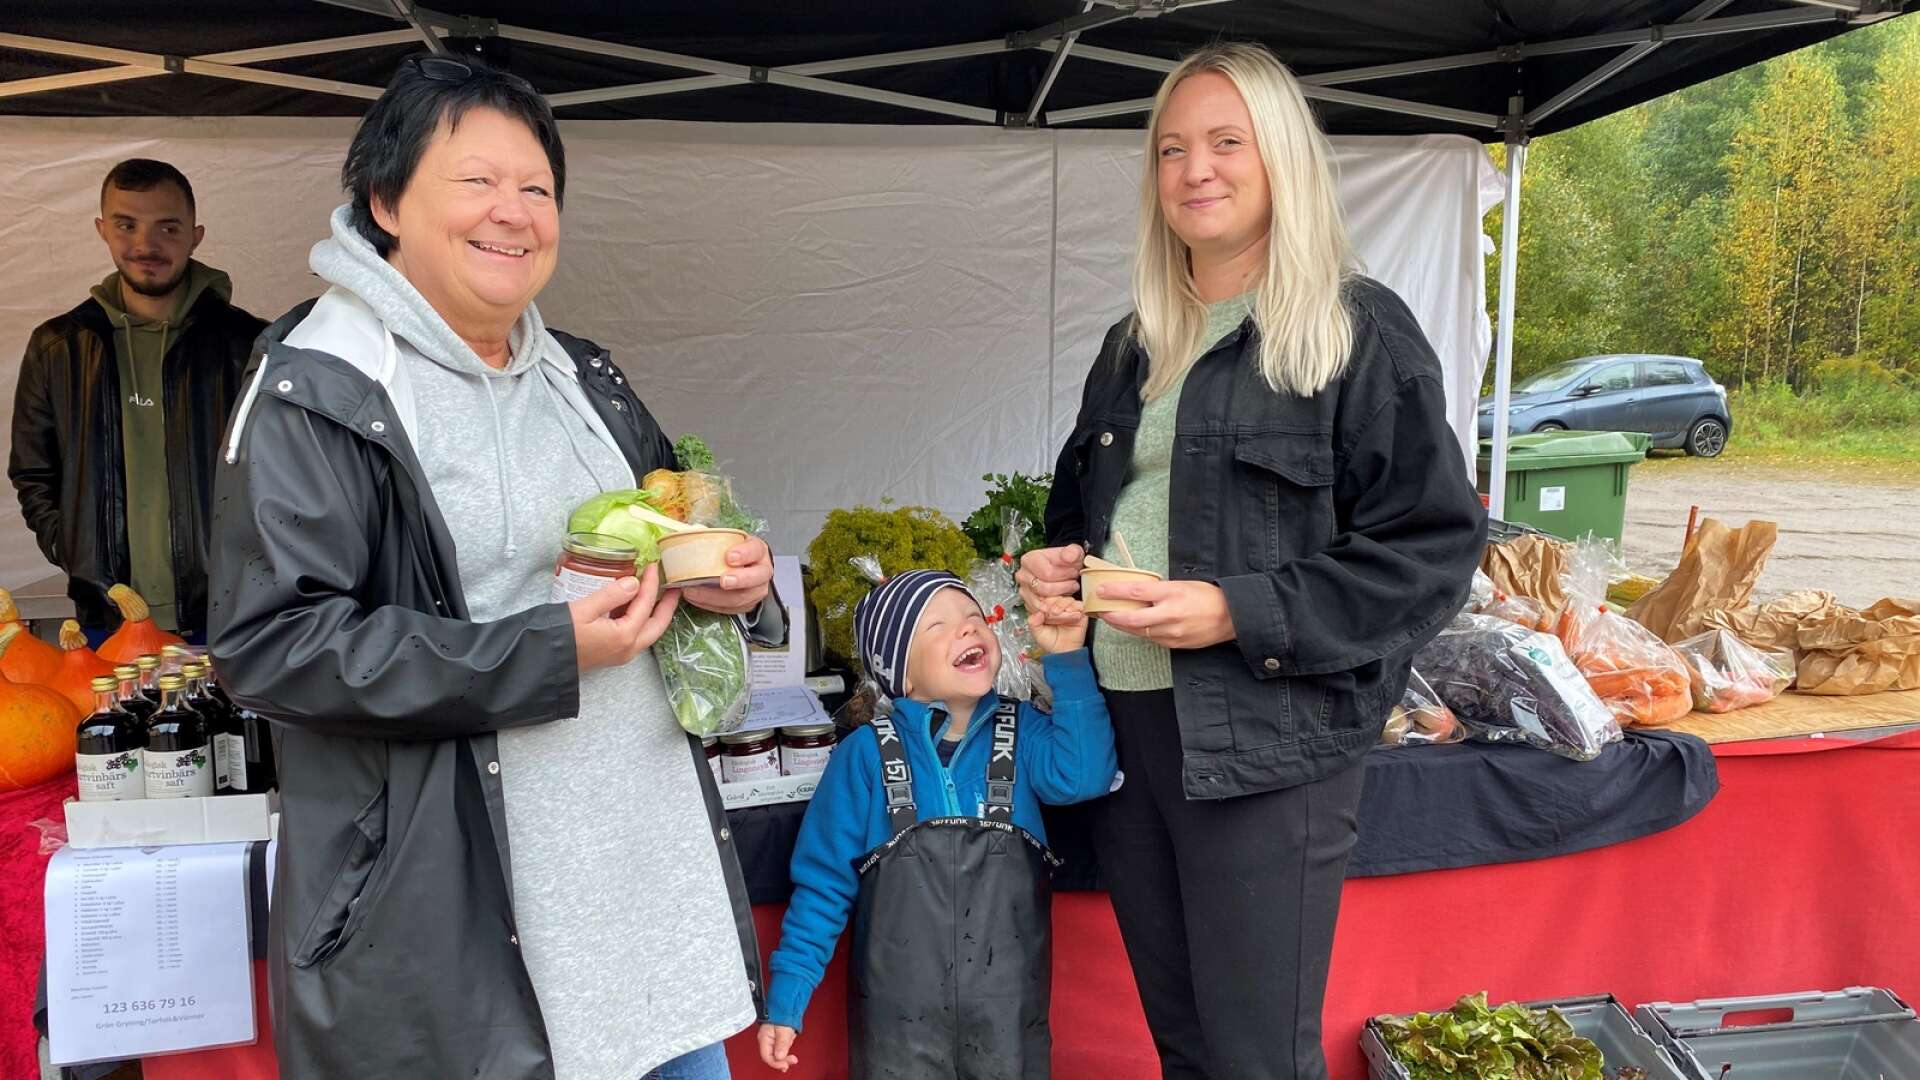  Carina Johansson med dotter Julia Nilsson och barnbarnet Levi Sigurdsson från Sunne köpte grönsaker från Torfolk gård.